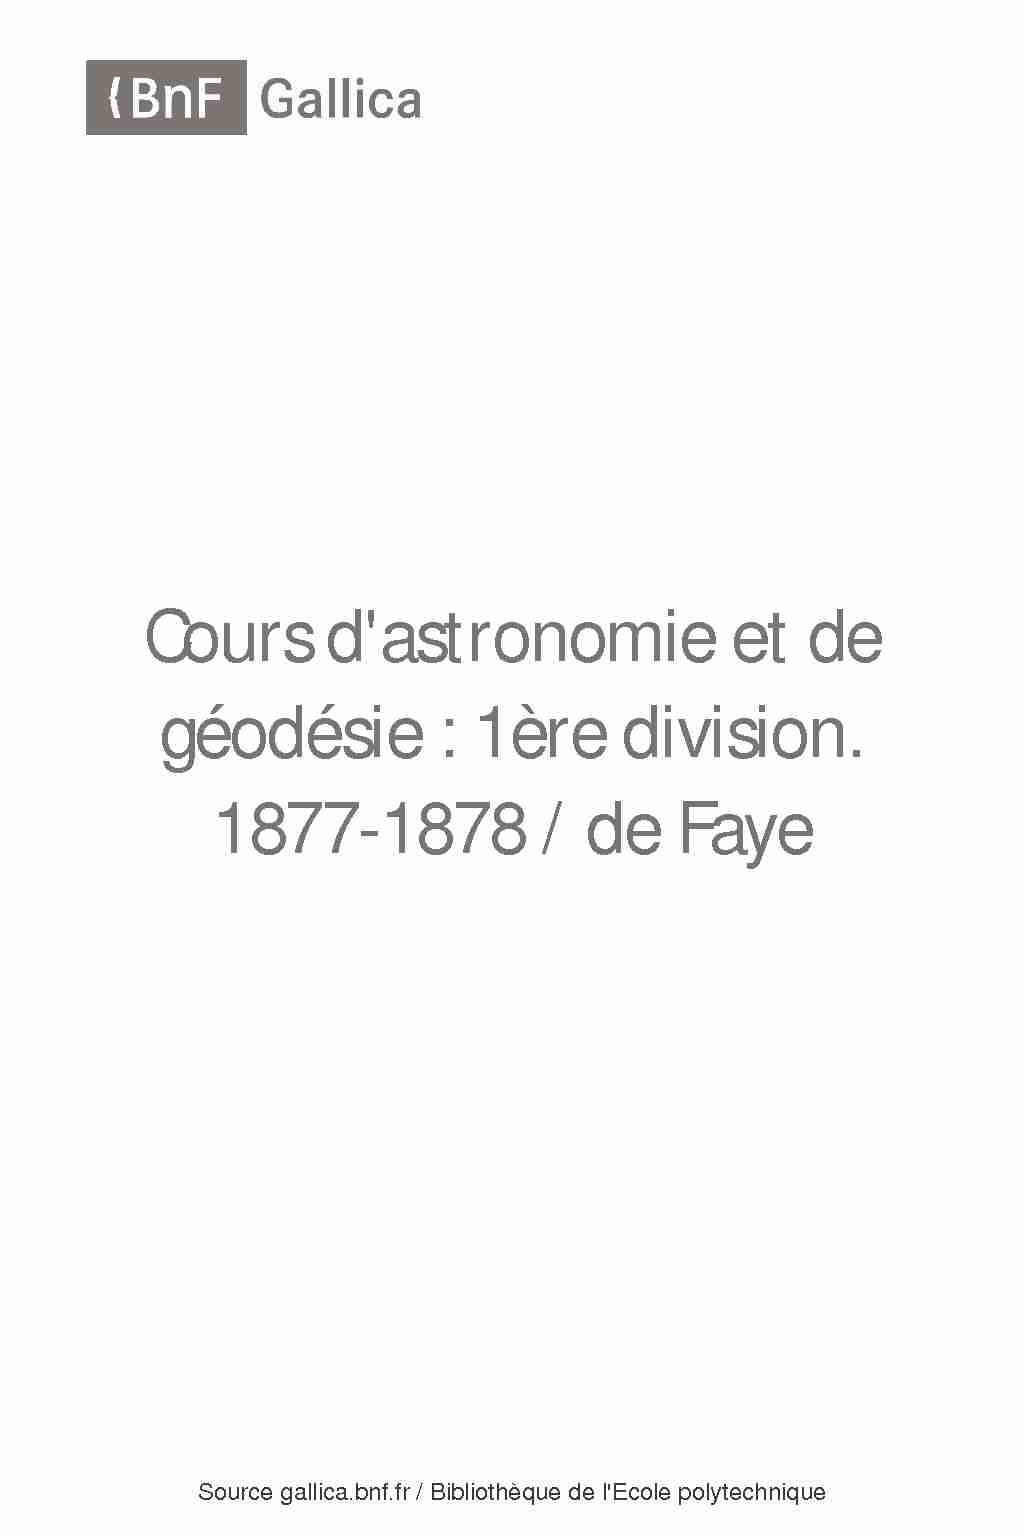 [PDF] Cours dastronomie et de géodésie : 1ère division / de Faye - Gallica